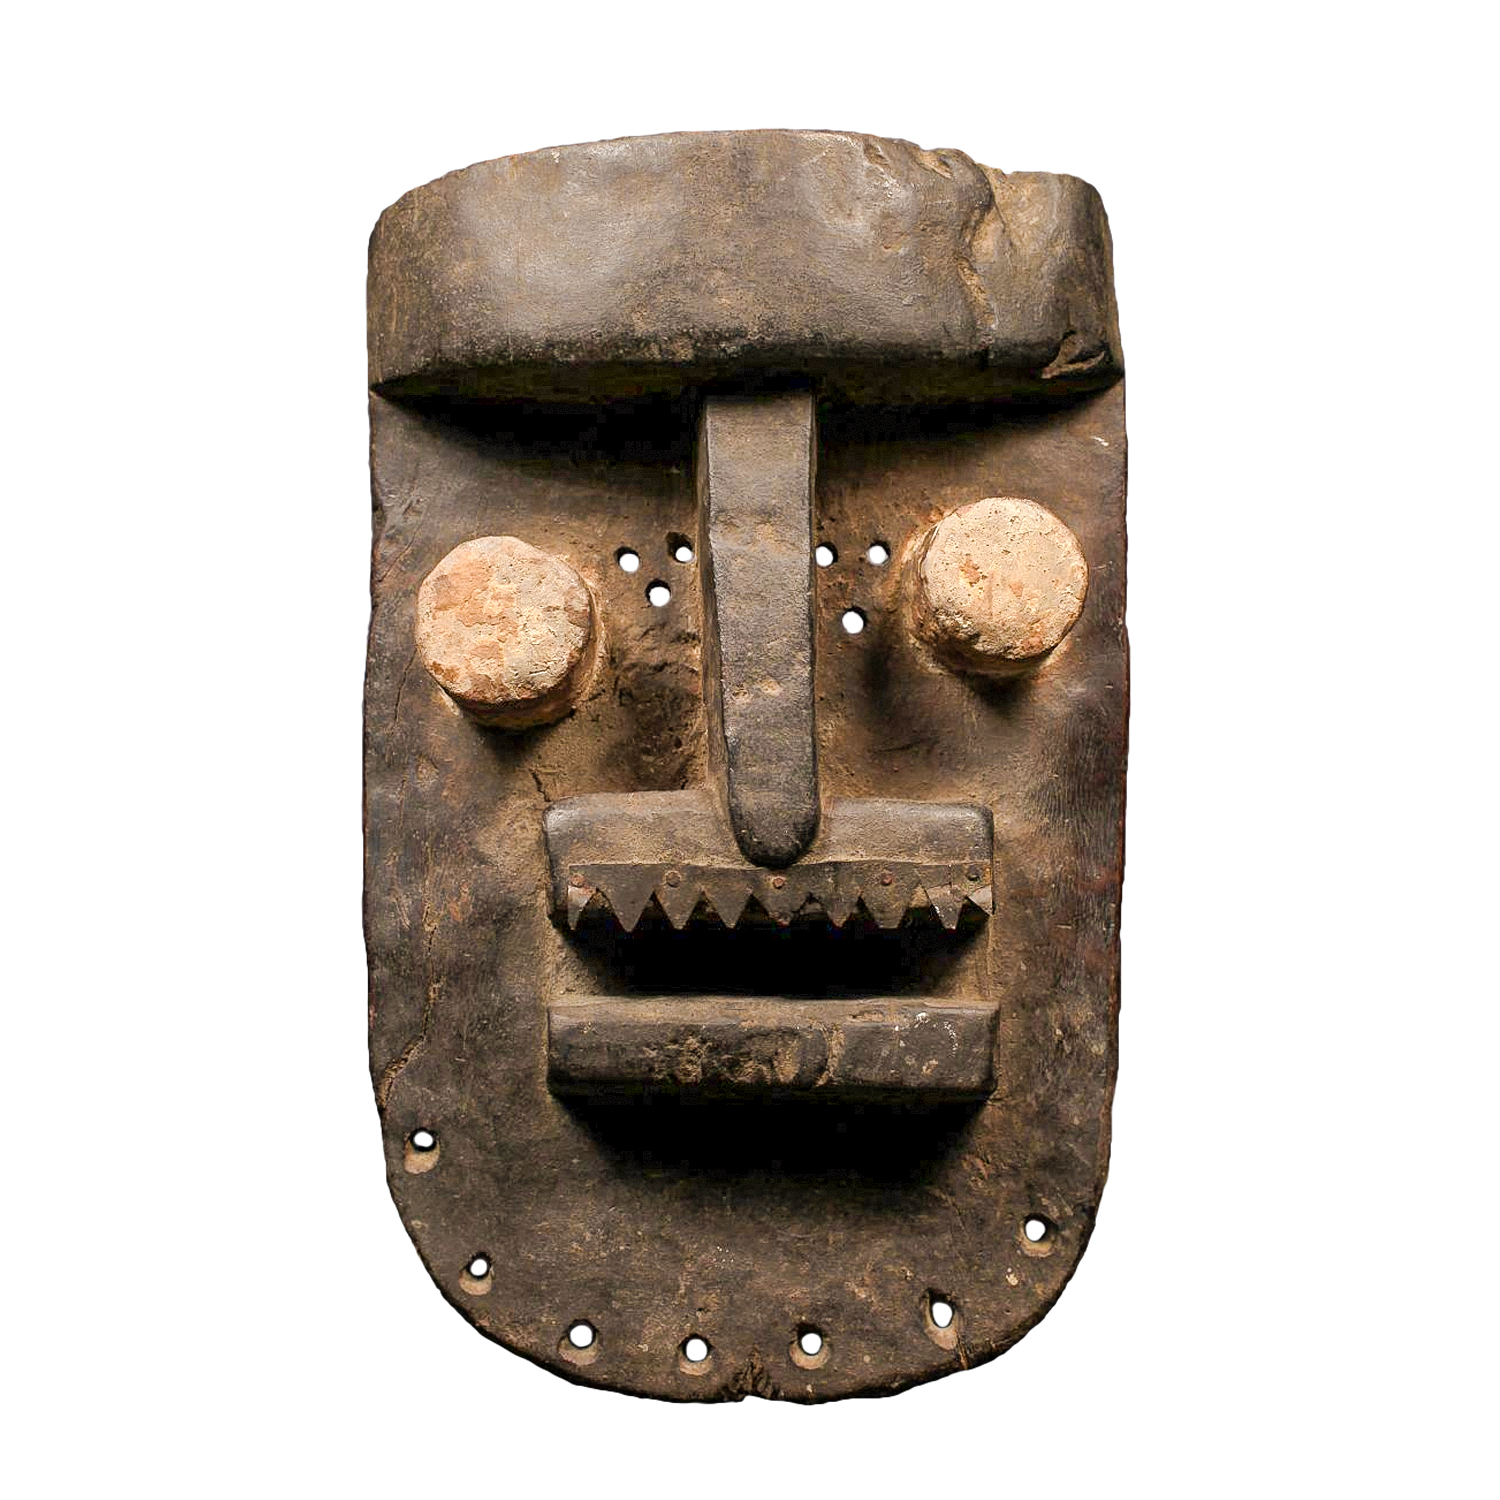 Máscara Kru, Grebo, Libéria, século XX, madeira, metal, pigmentos